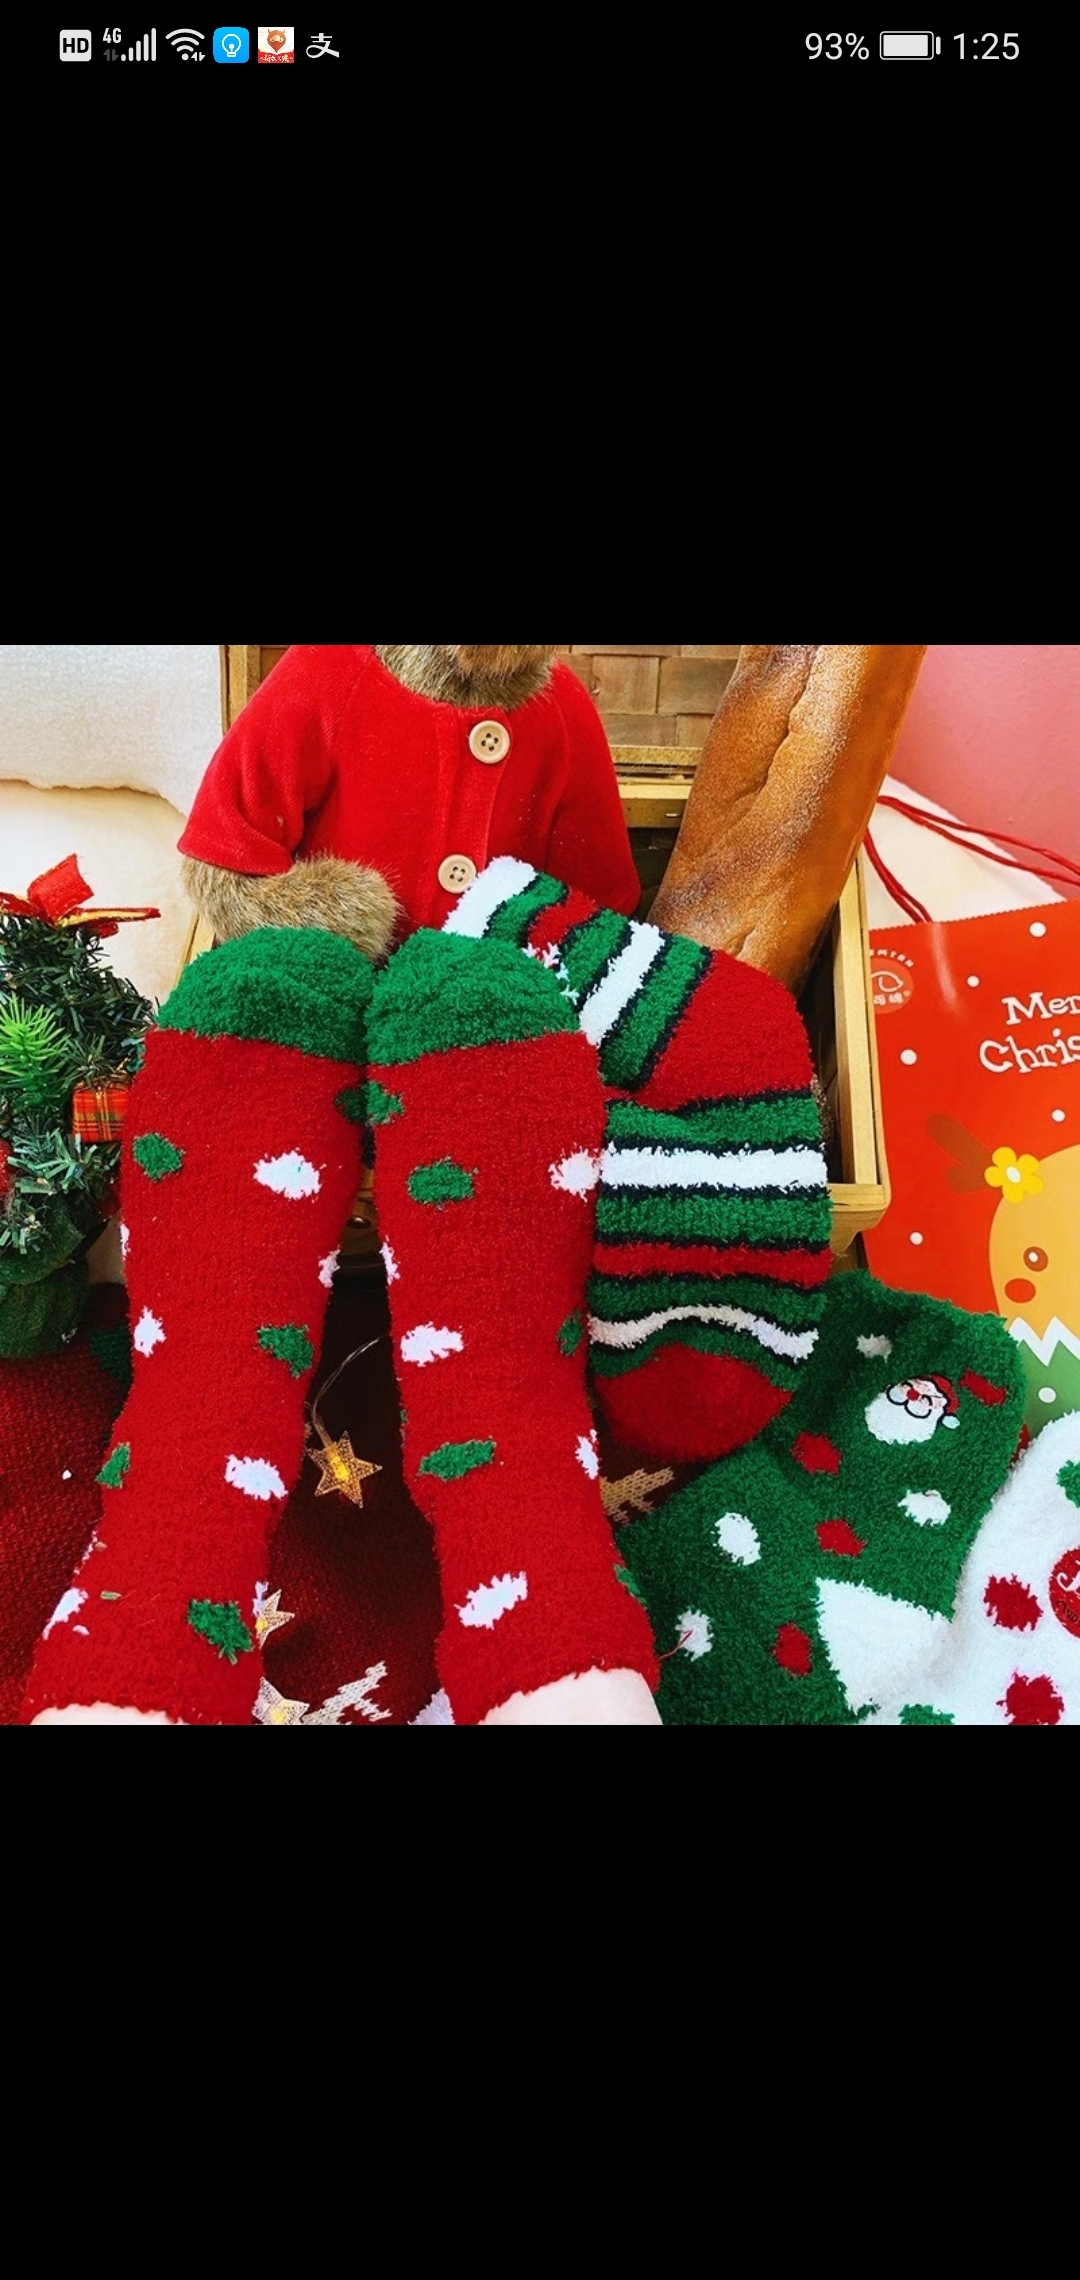    Christmas cozy socks